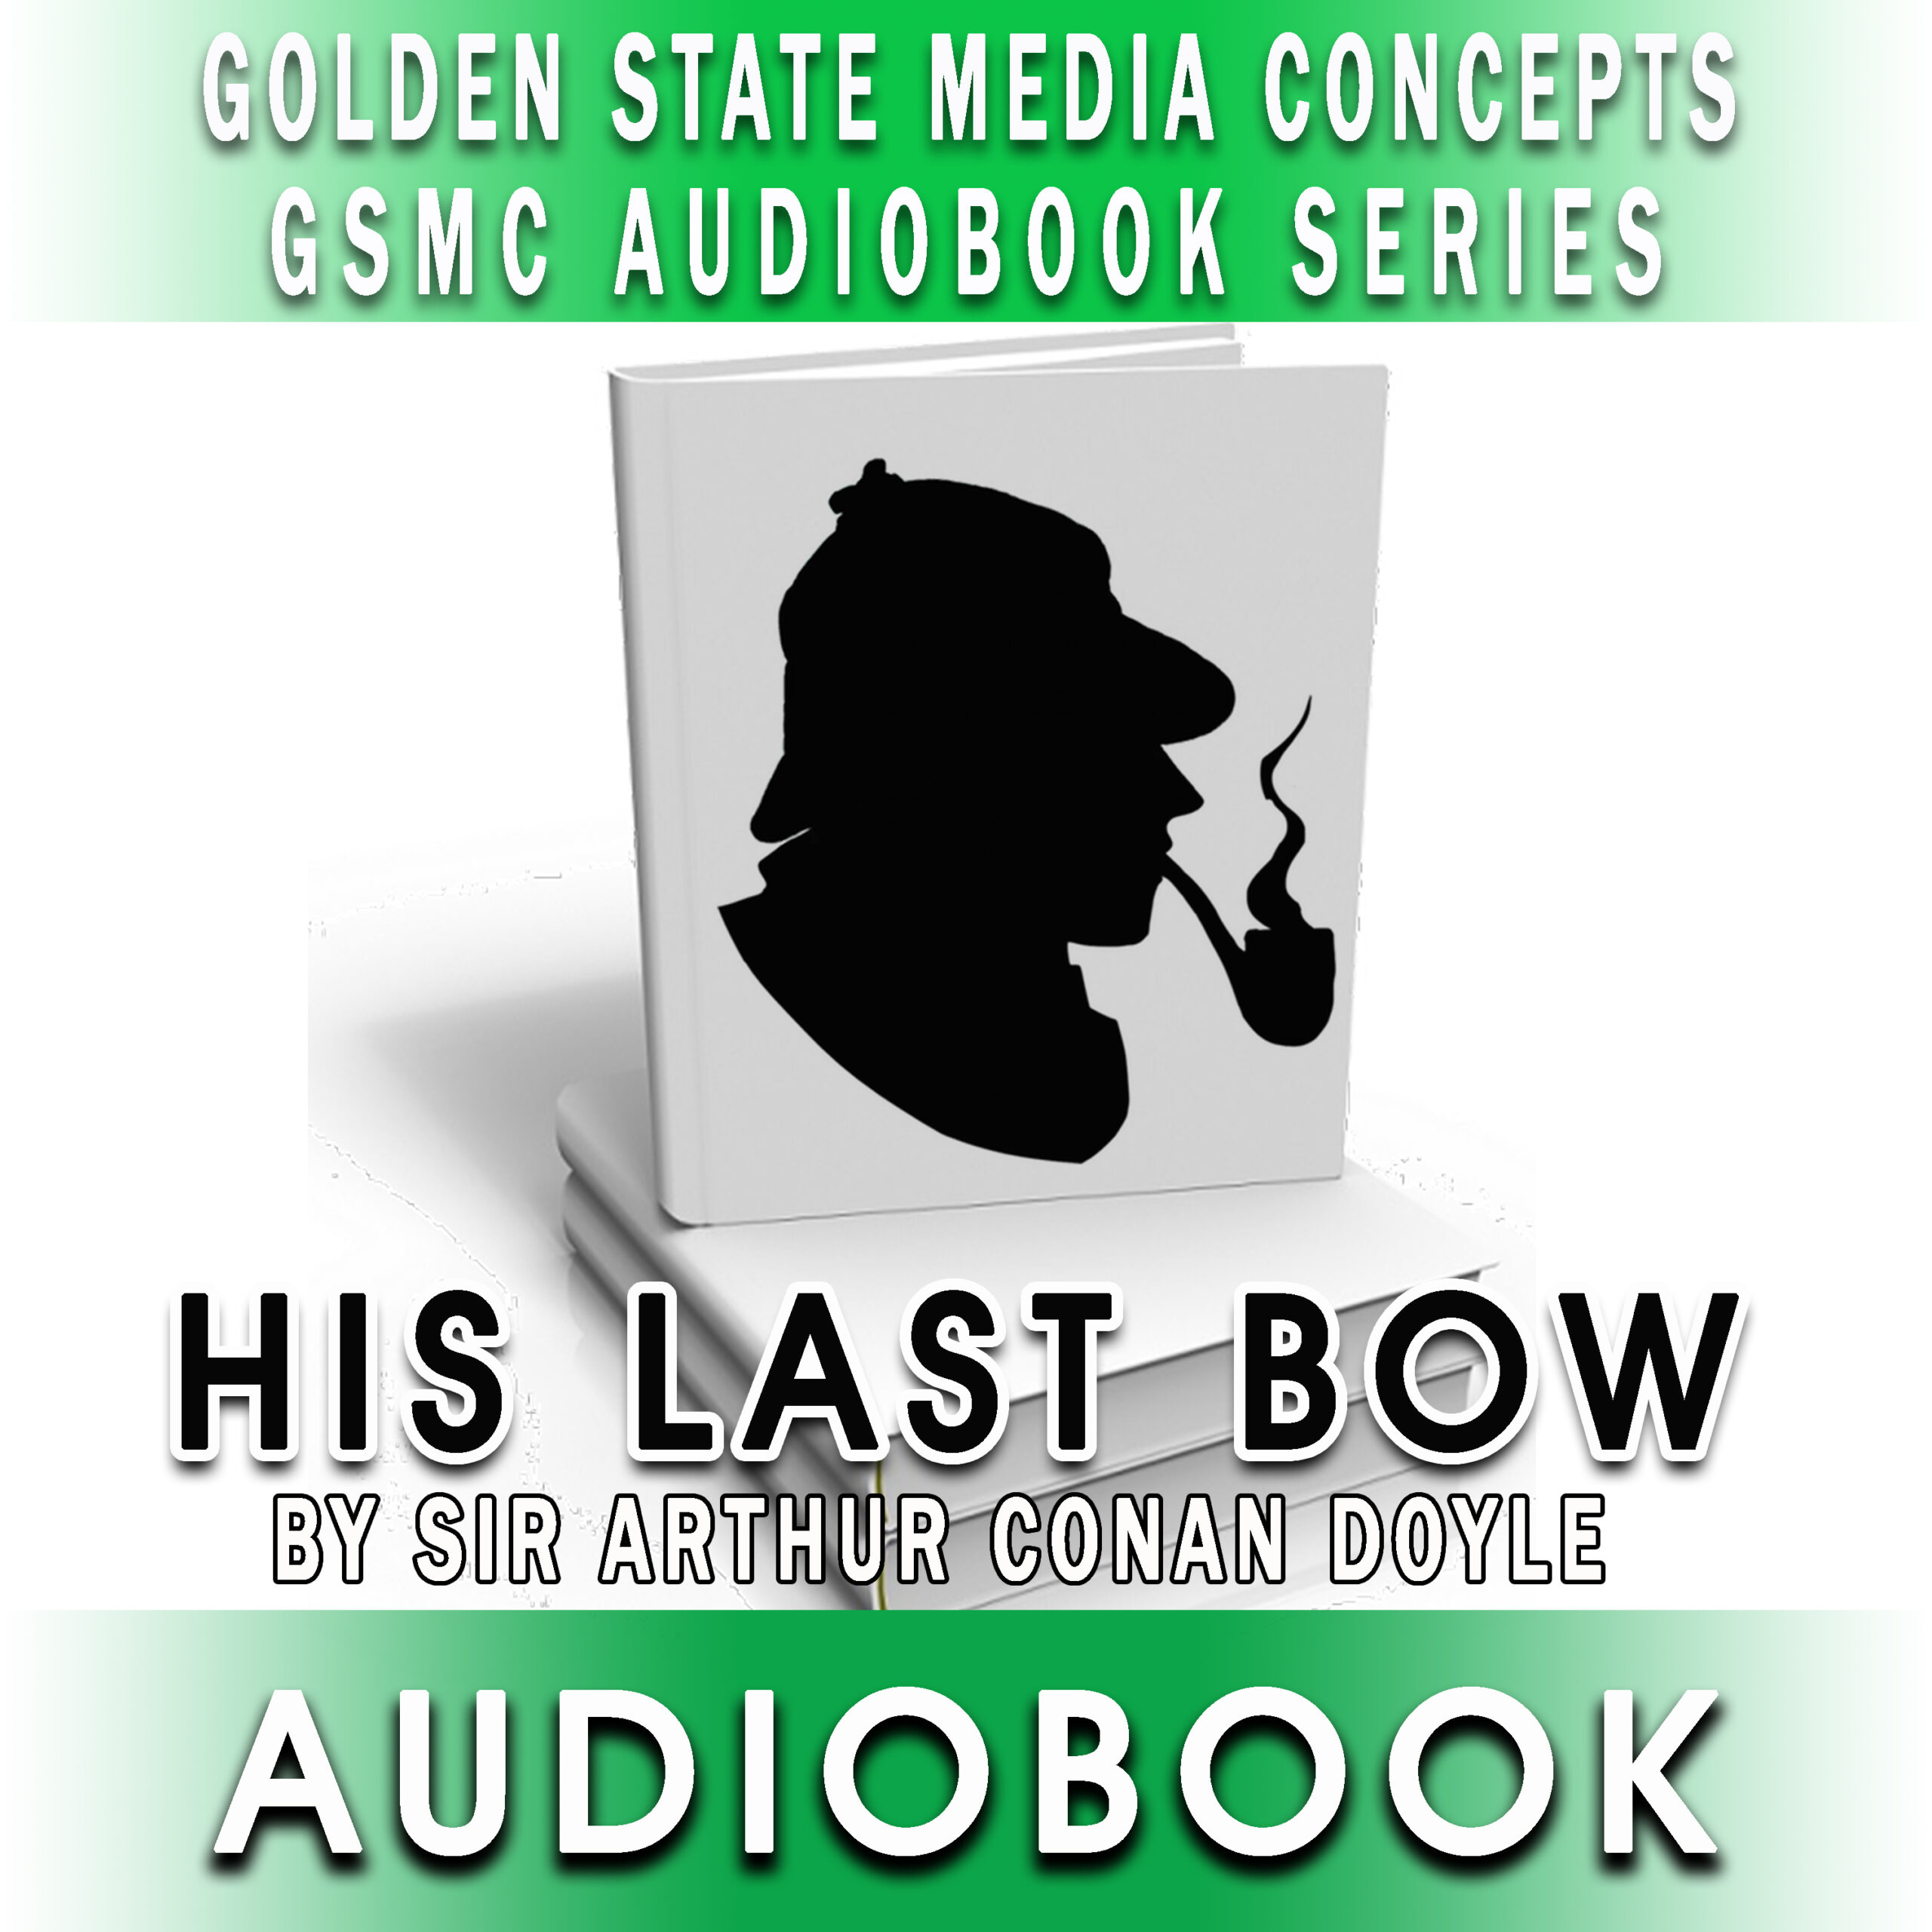 GSMC Audiobook Series: His Last Bow by Arthur Conan Doyle